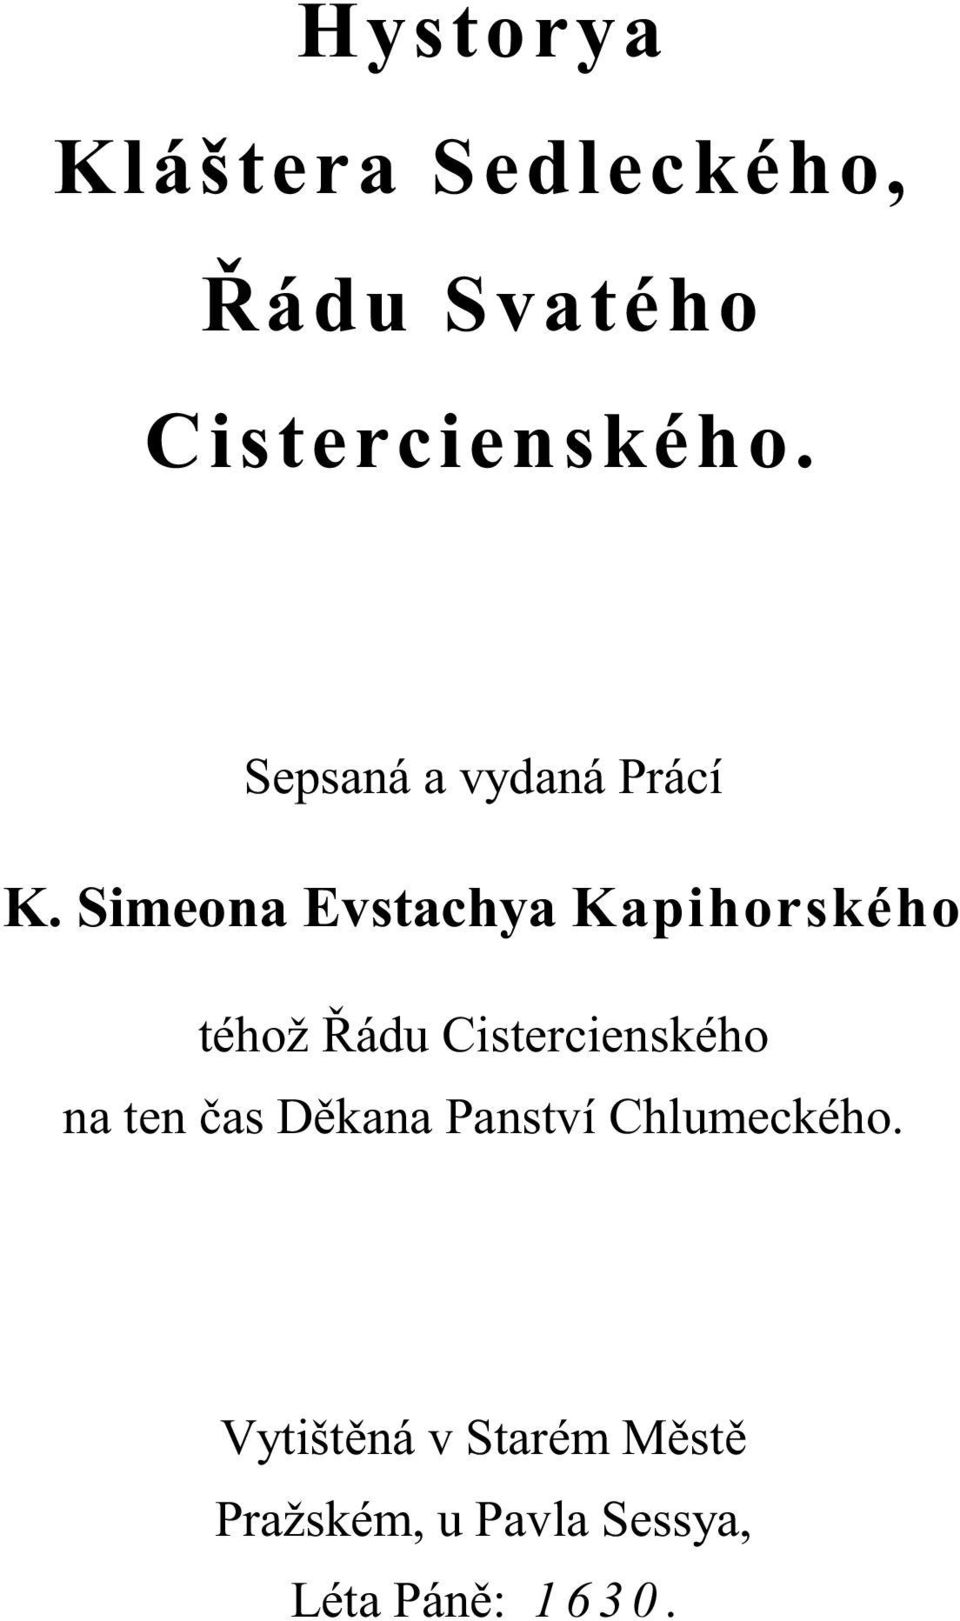 Simeona Evstachya Kapihorského téhož ádu Cistercienského na